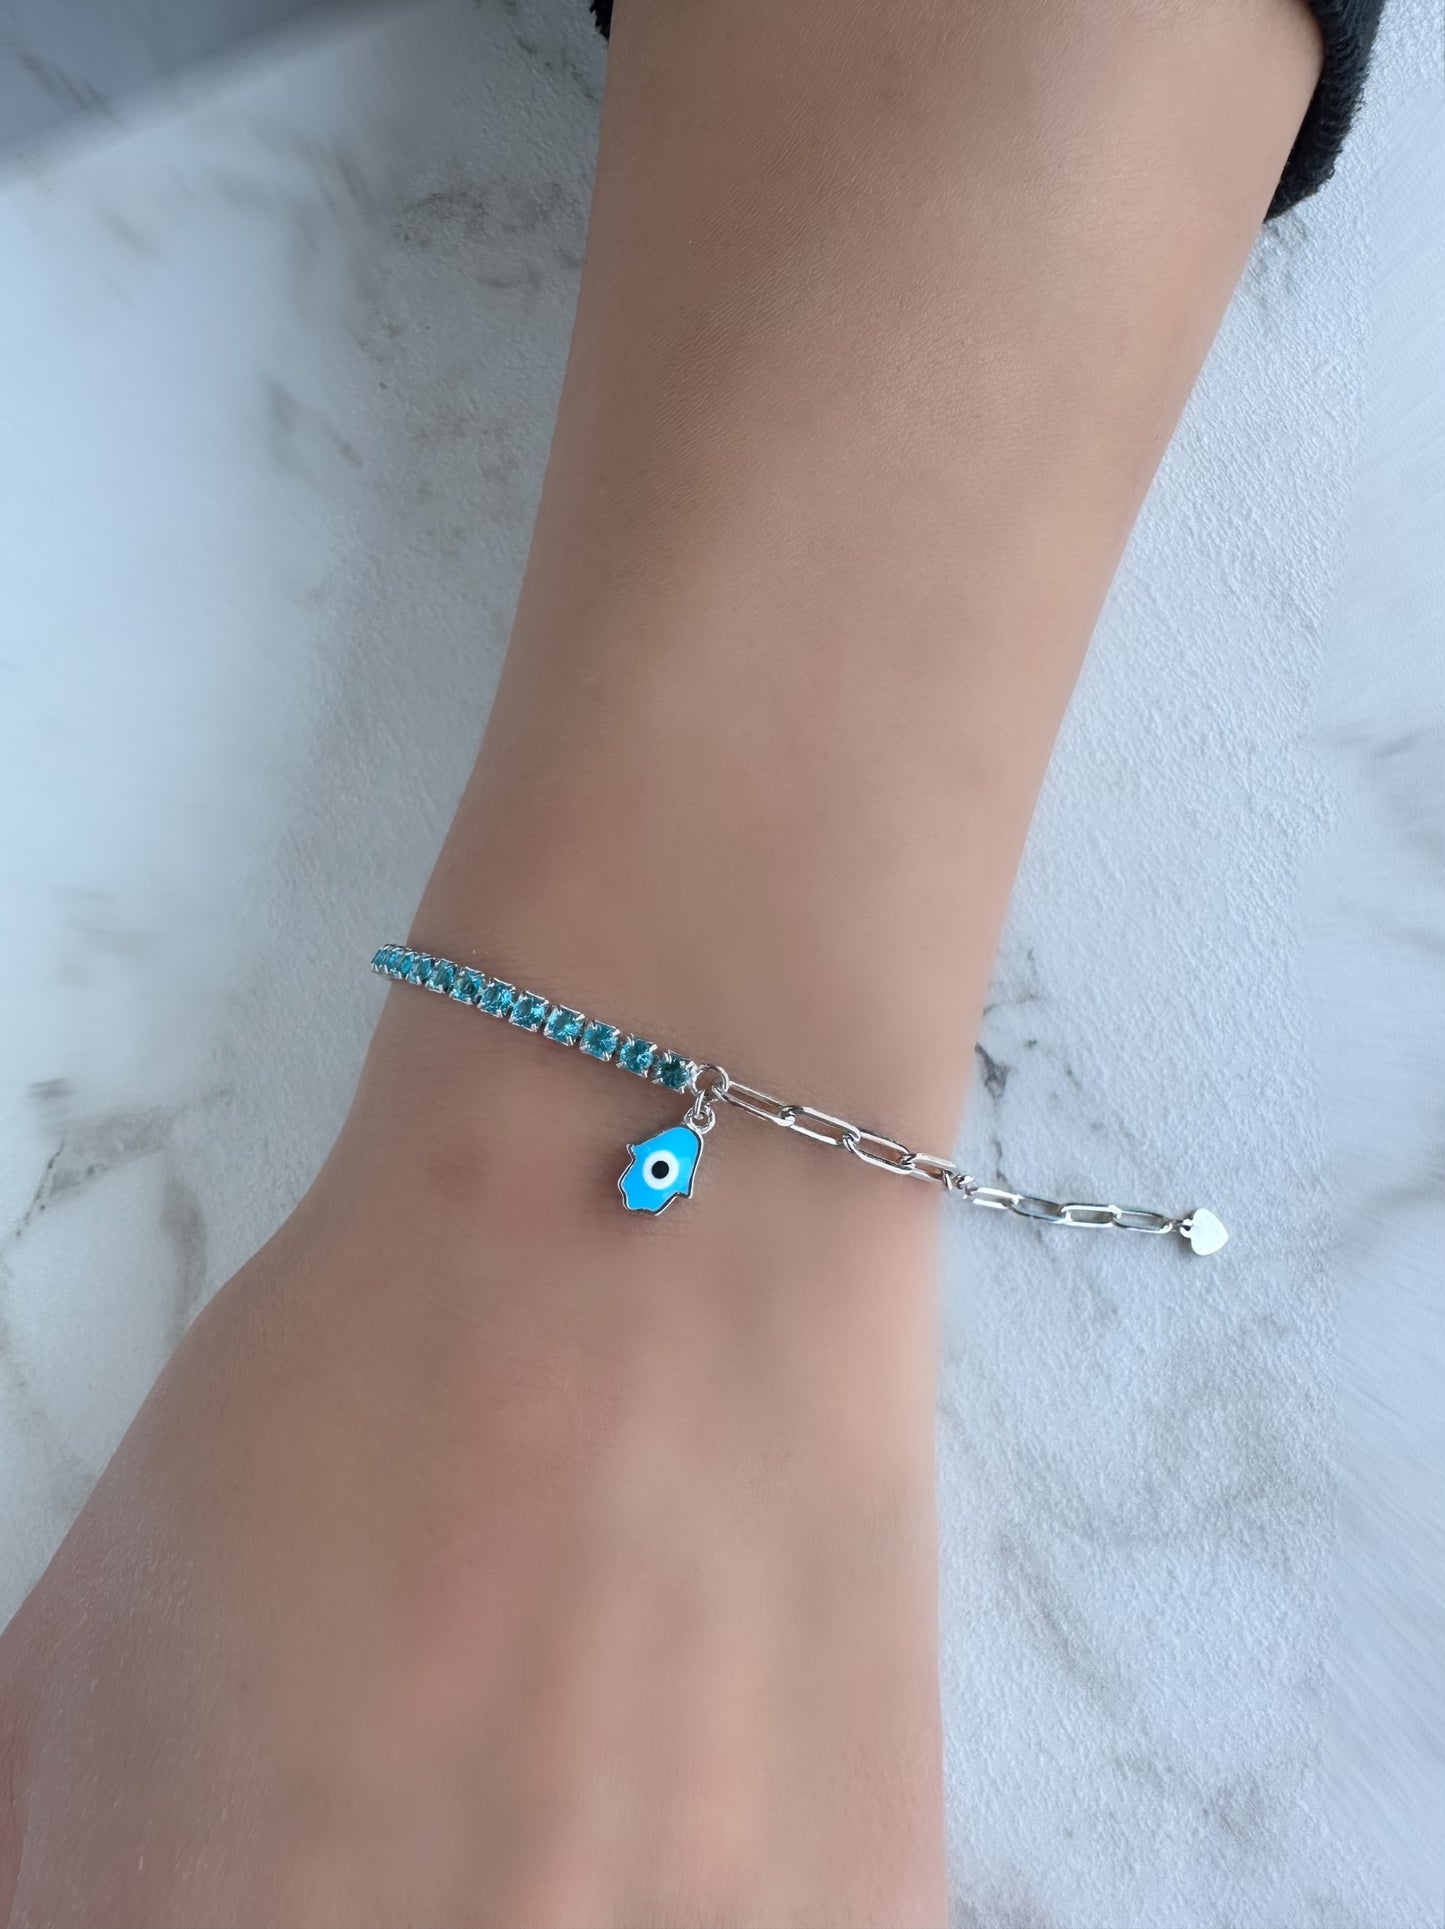 Turquoise Hand Bracelet Half Zircon Half Link Chain